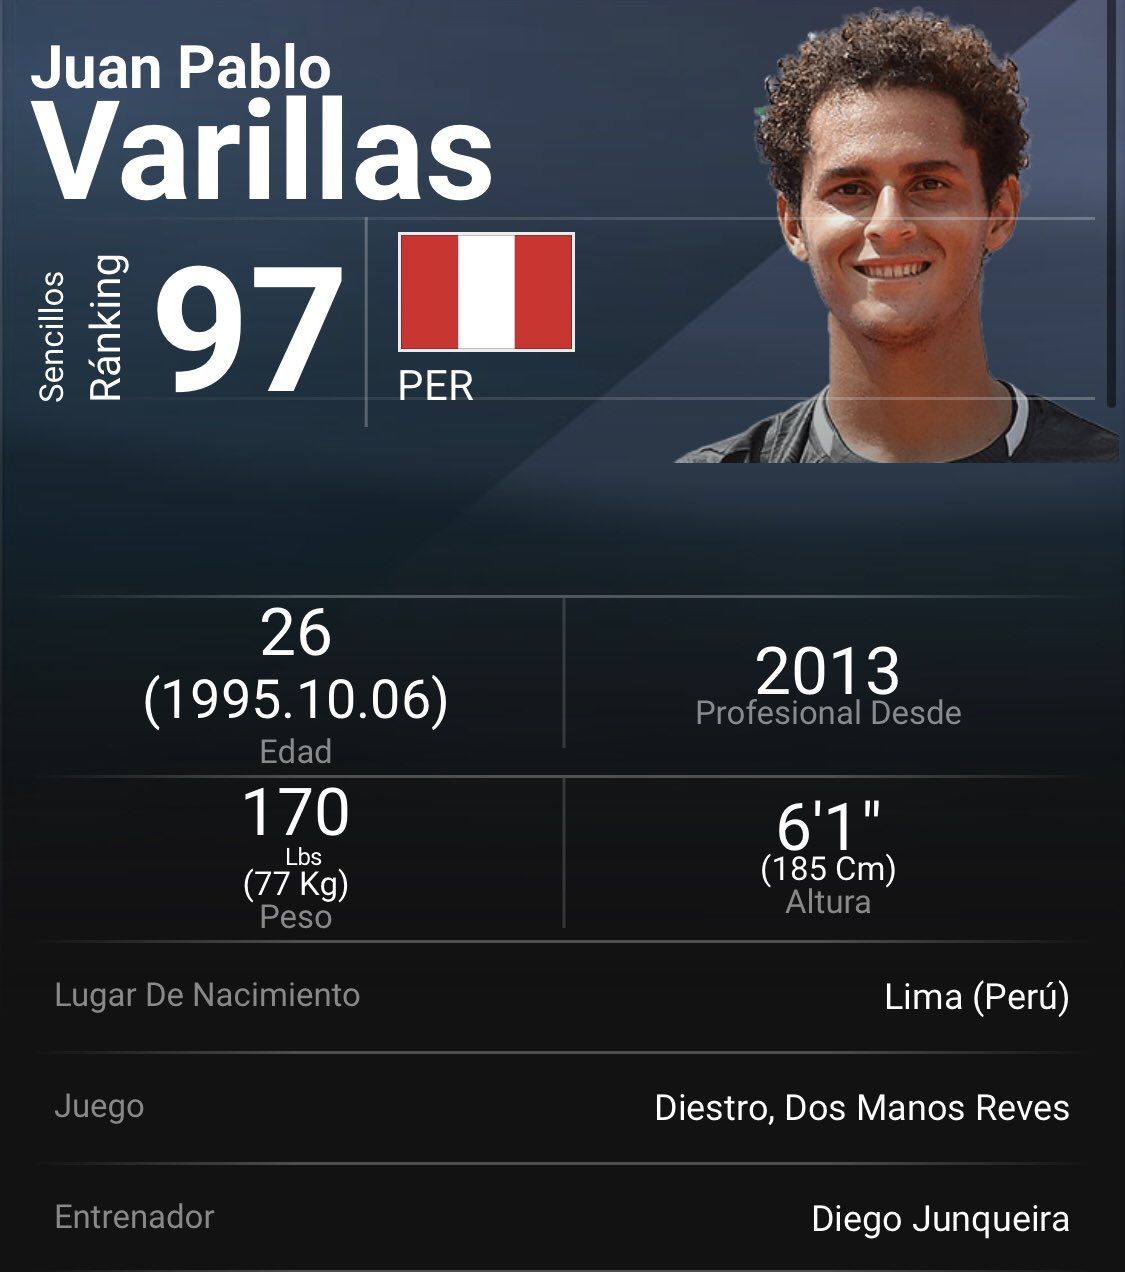 Juan Pablo Varillas ocupa el puesto 97 del ranking ATP.